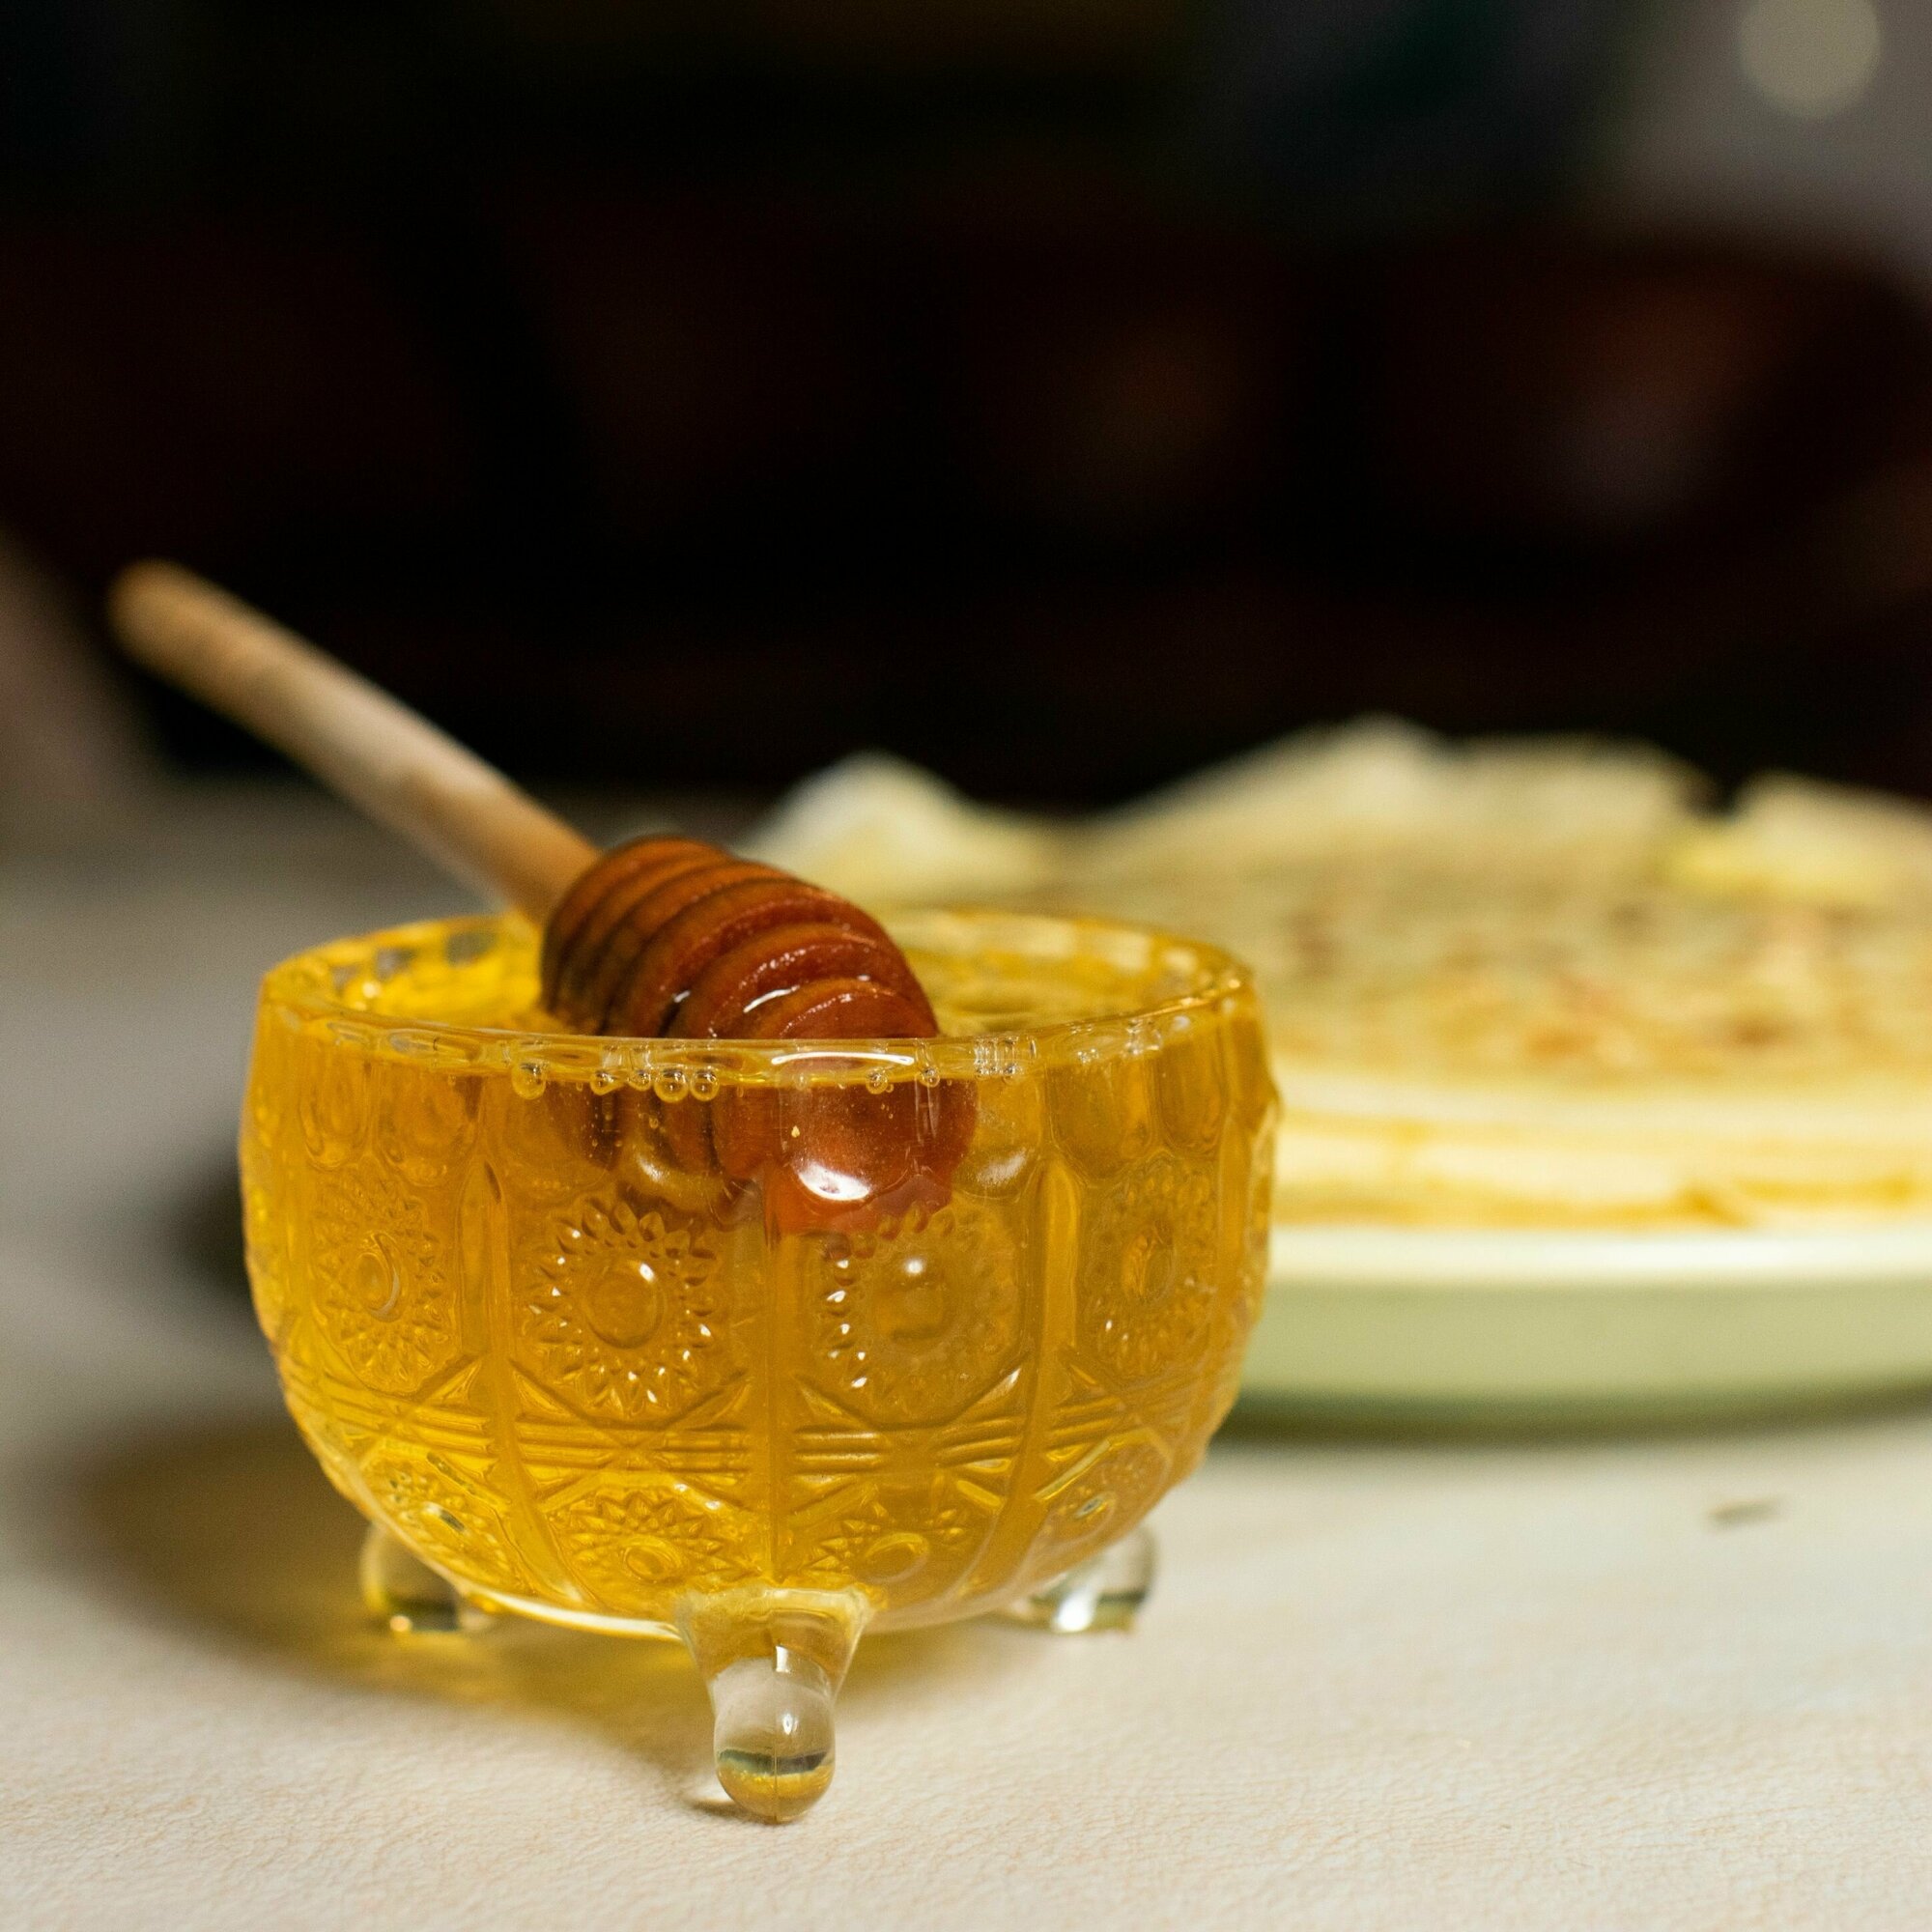 мед башкирский липовый горный вкусный натуральный лечебный кондитерский без сахара без нагрева фасованный для вас - фотография № 9